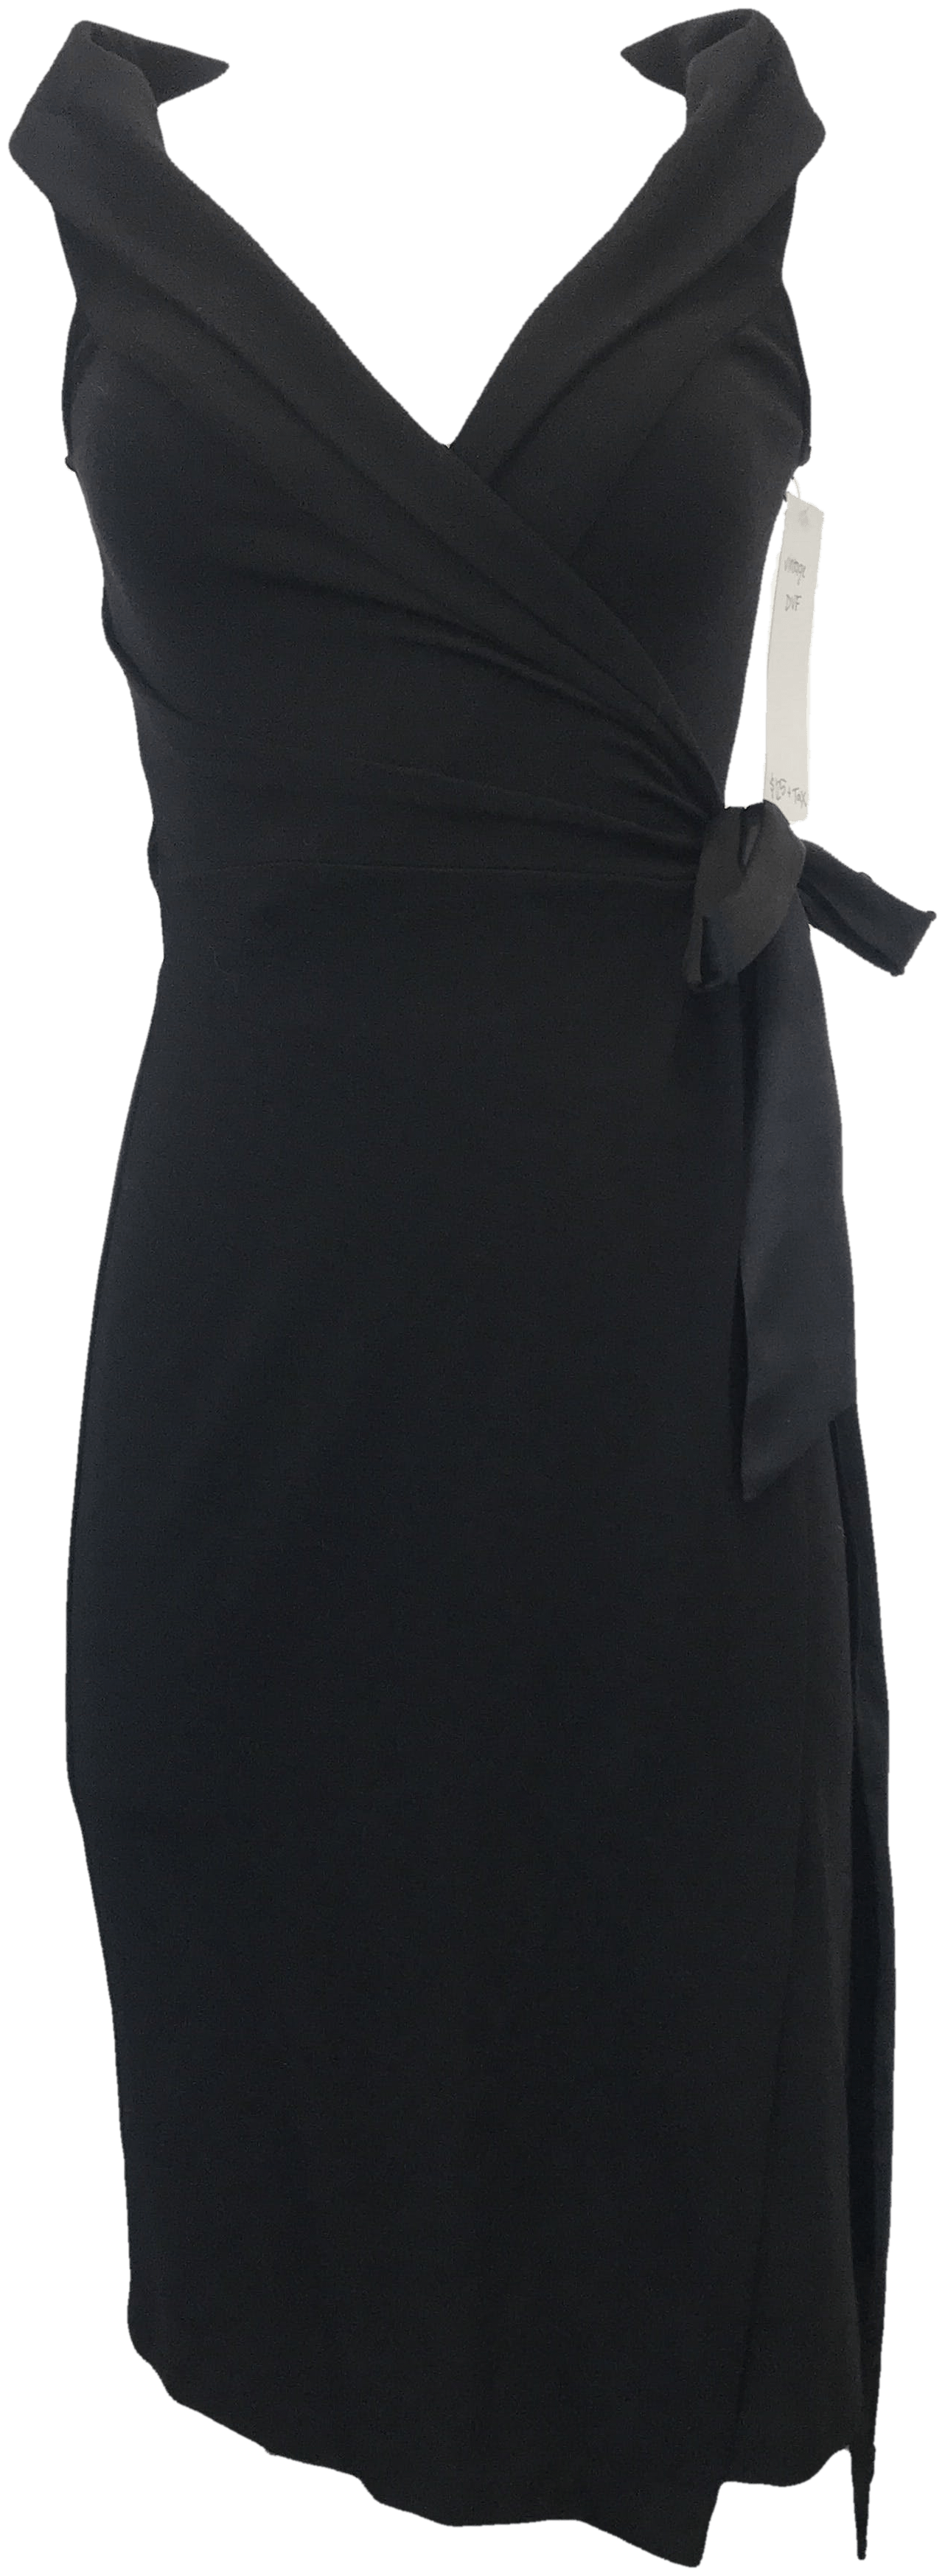 Vintage Black Wrap Dress by Diane von Furstenberg - Thrilling